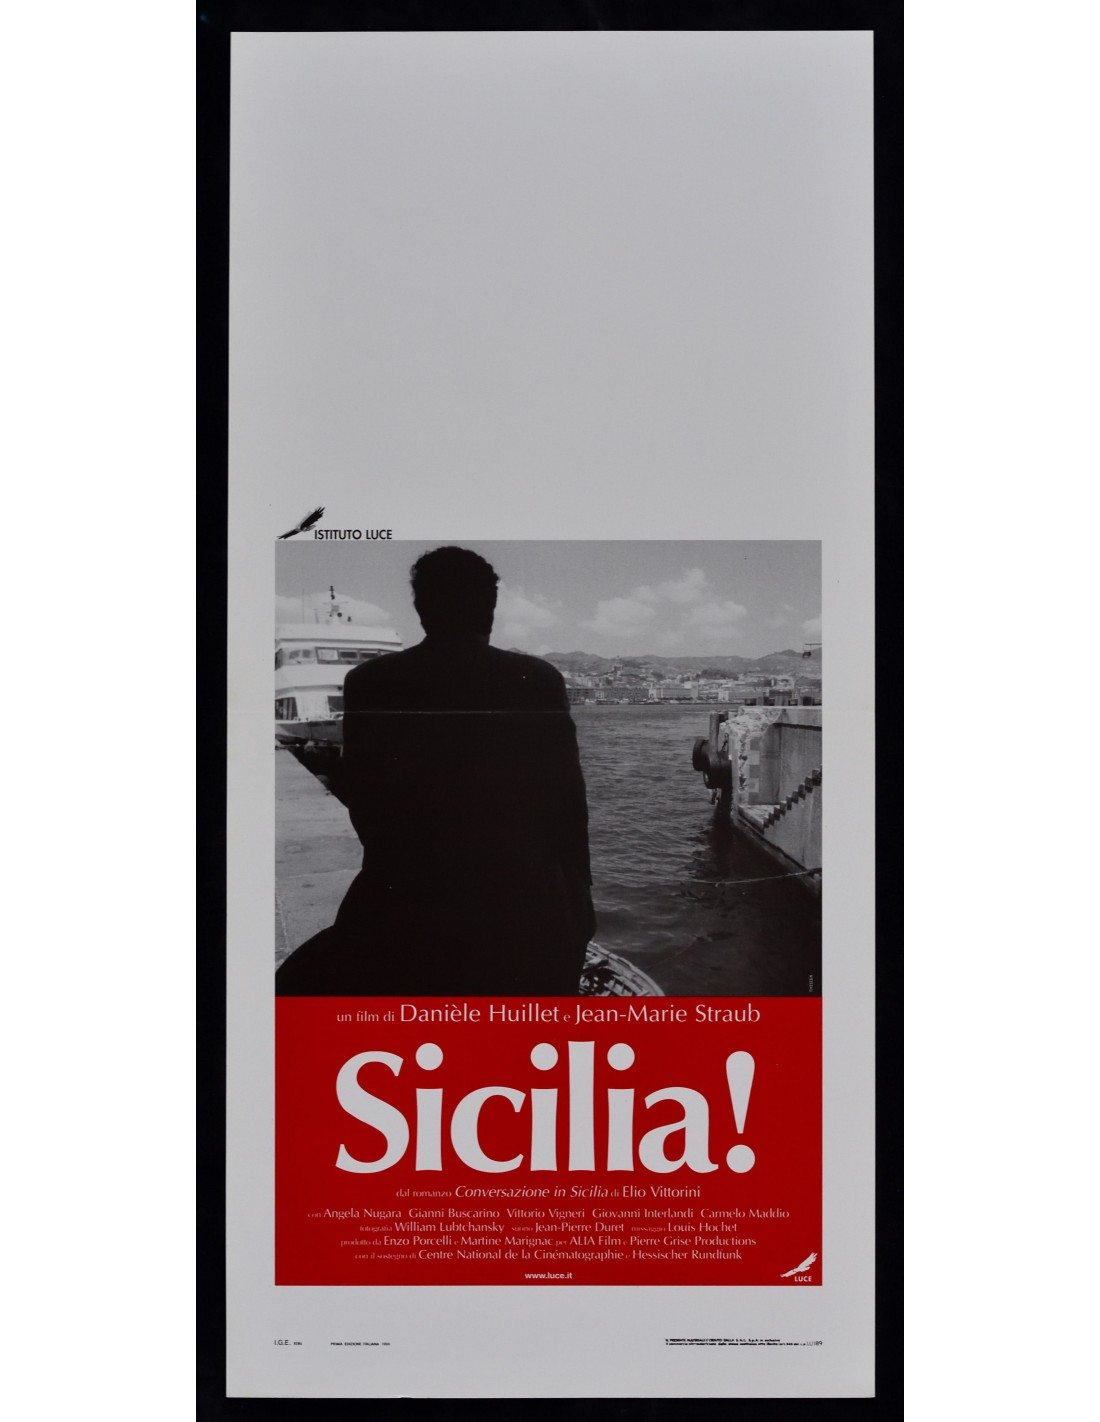 CORNICE nera per LOCANDINA cinema formato 33x70 cm in legno film poster  affiche